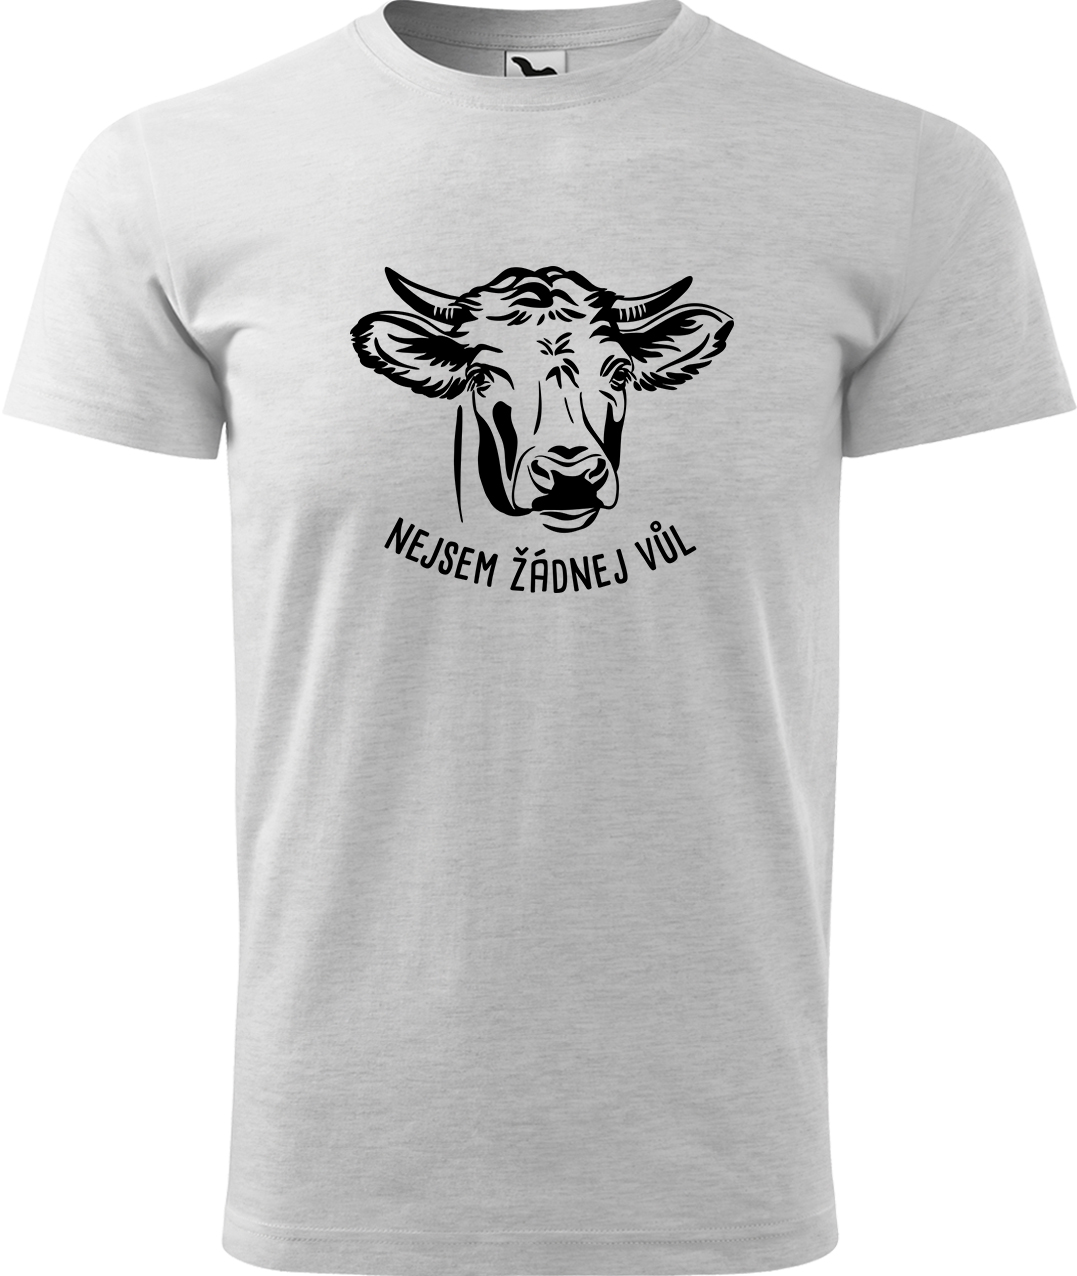 Pánské tričko s krávou - Nejsem žádnej vůl Velikost: 3XL, Barva: Světle šedý melír (03), Střih: pánský